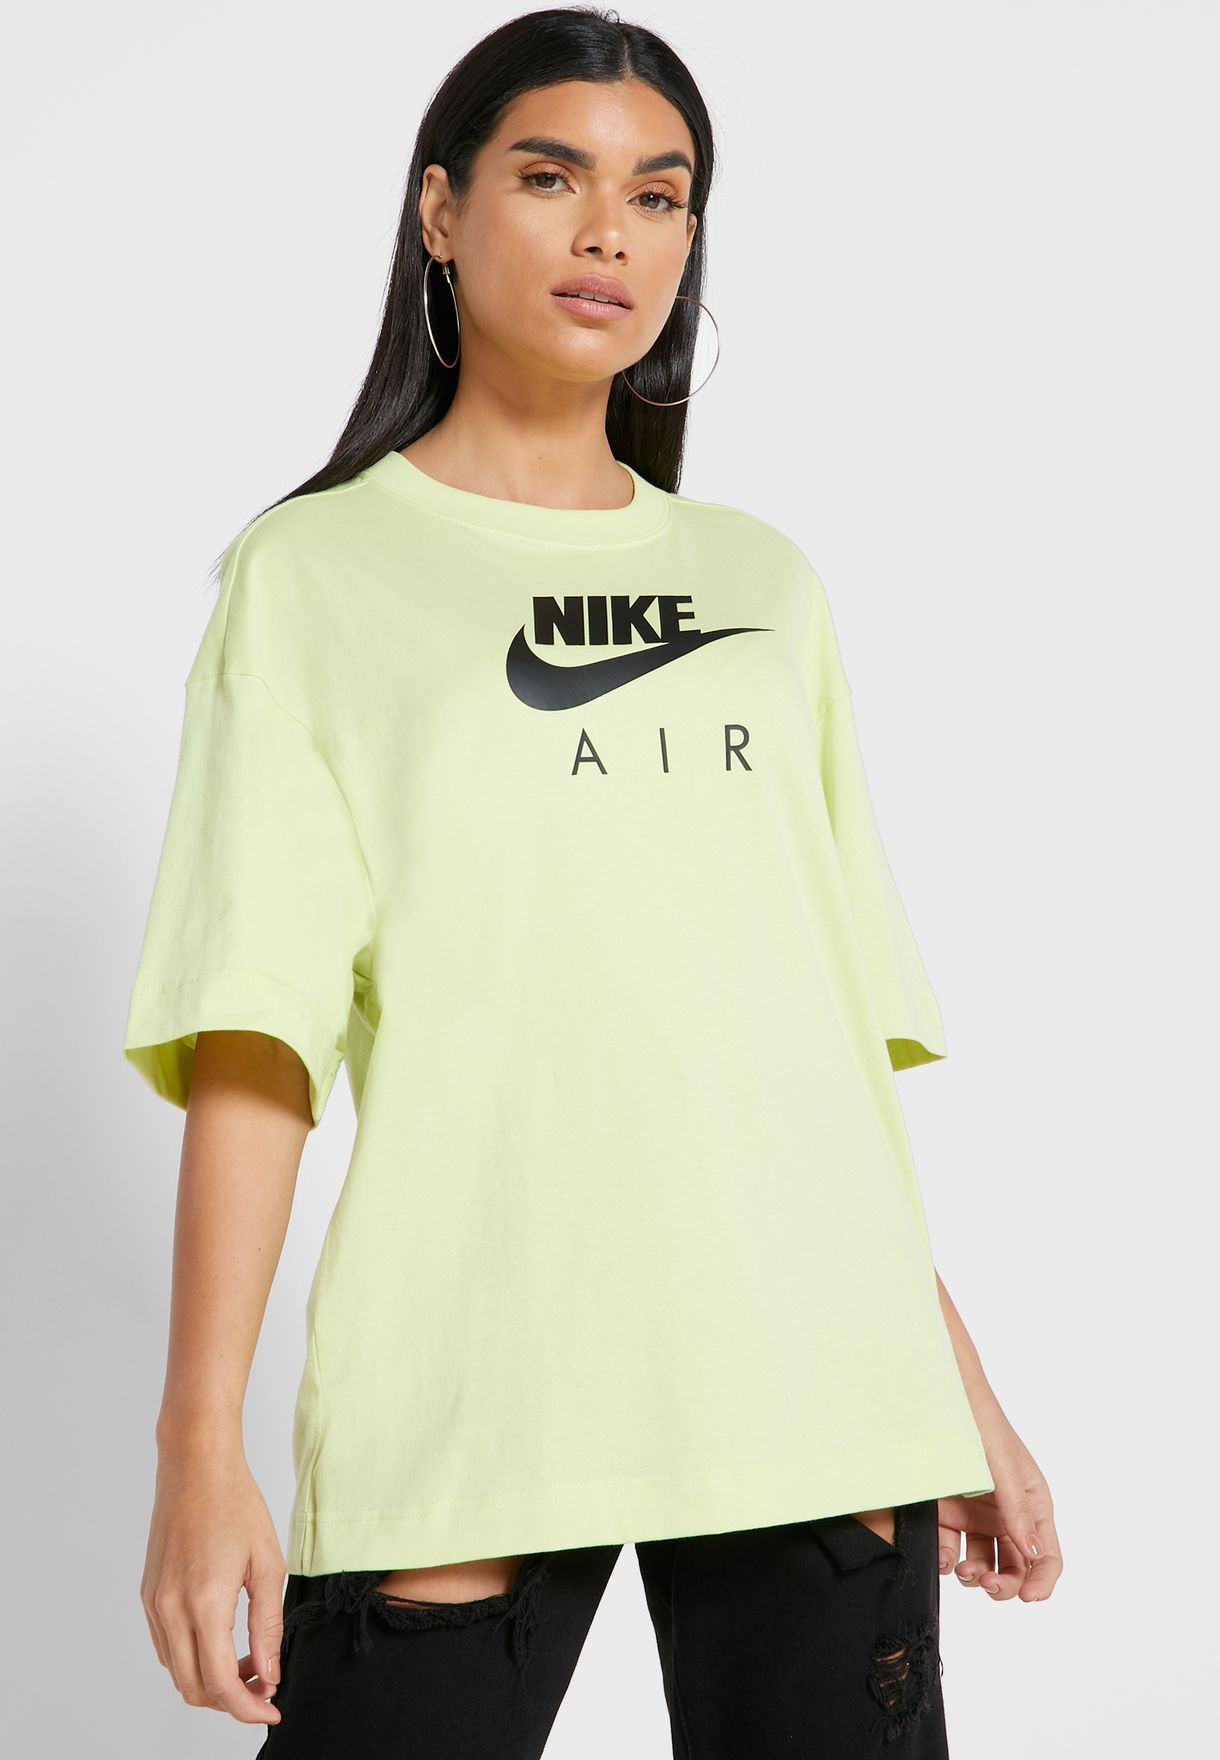 nike green t shirt women's